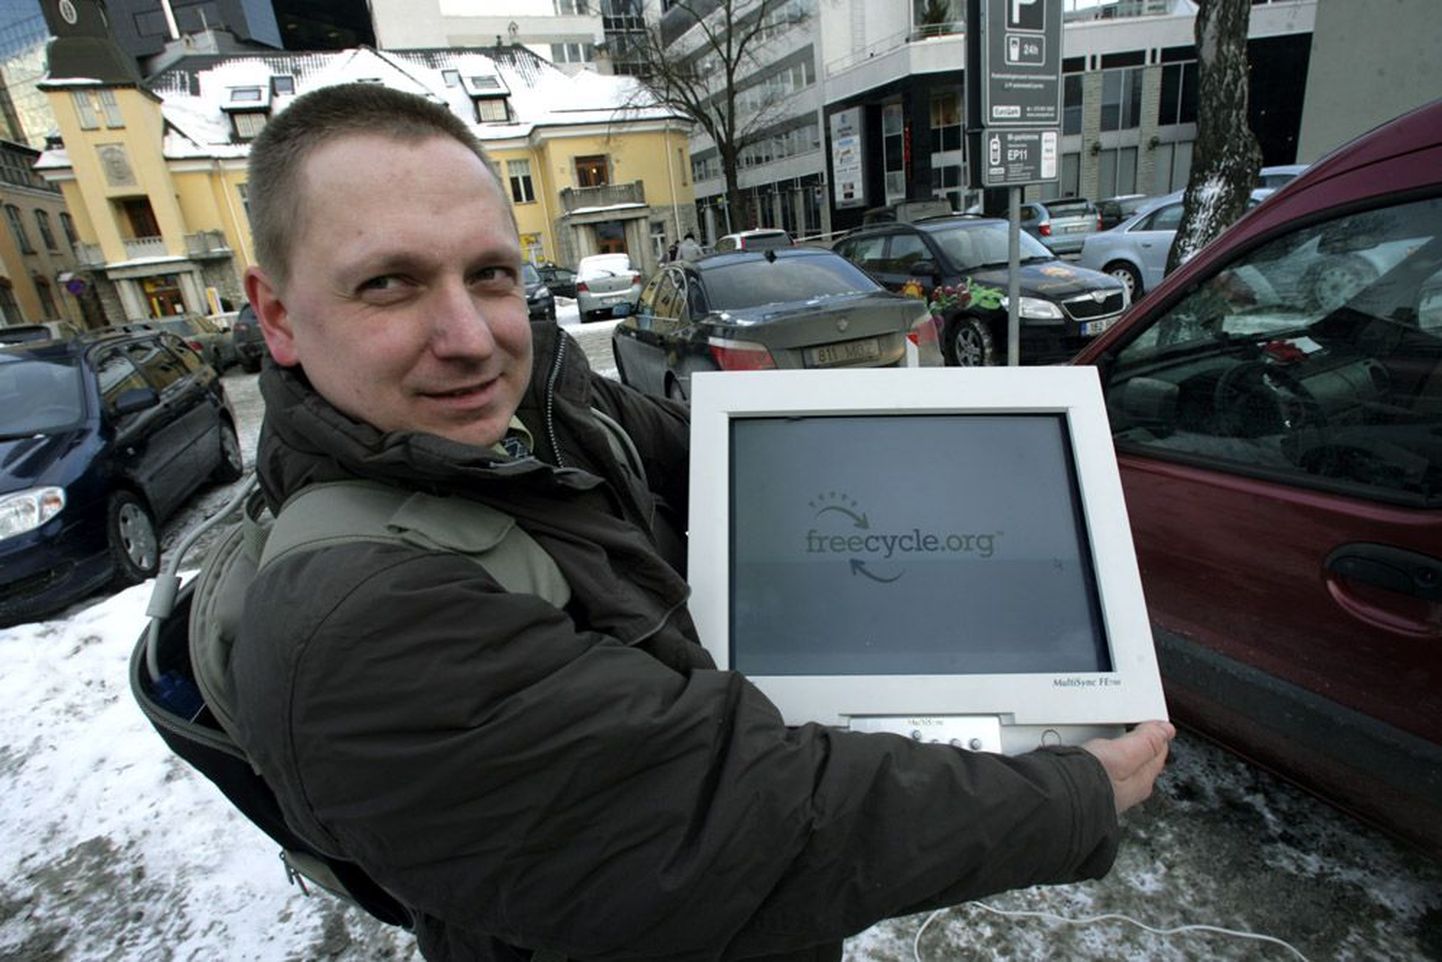 Tallinna freecycle’i grupi haldaja Joosep-Georg Järvemaa sõnul leidsid grupi kaudu hiljuti uue ja õnneliku omaniku muu hulgas neli sellist arvutikuvarit.